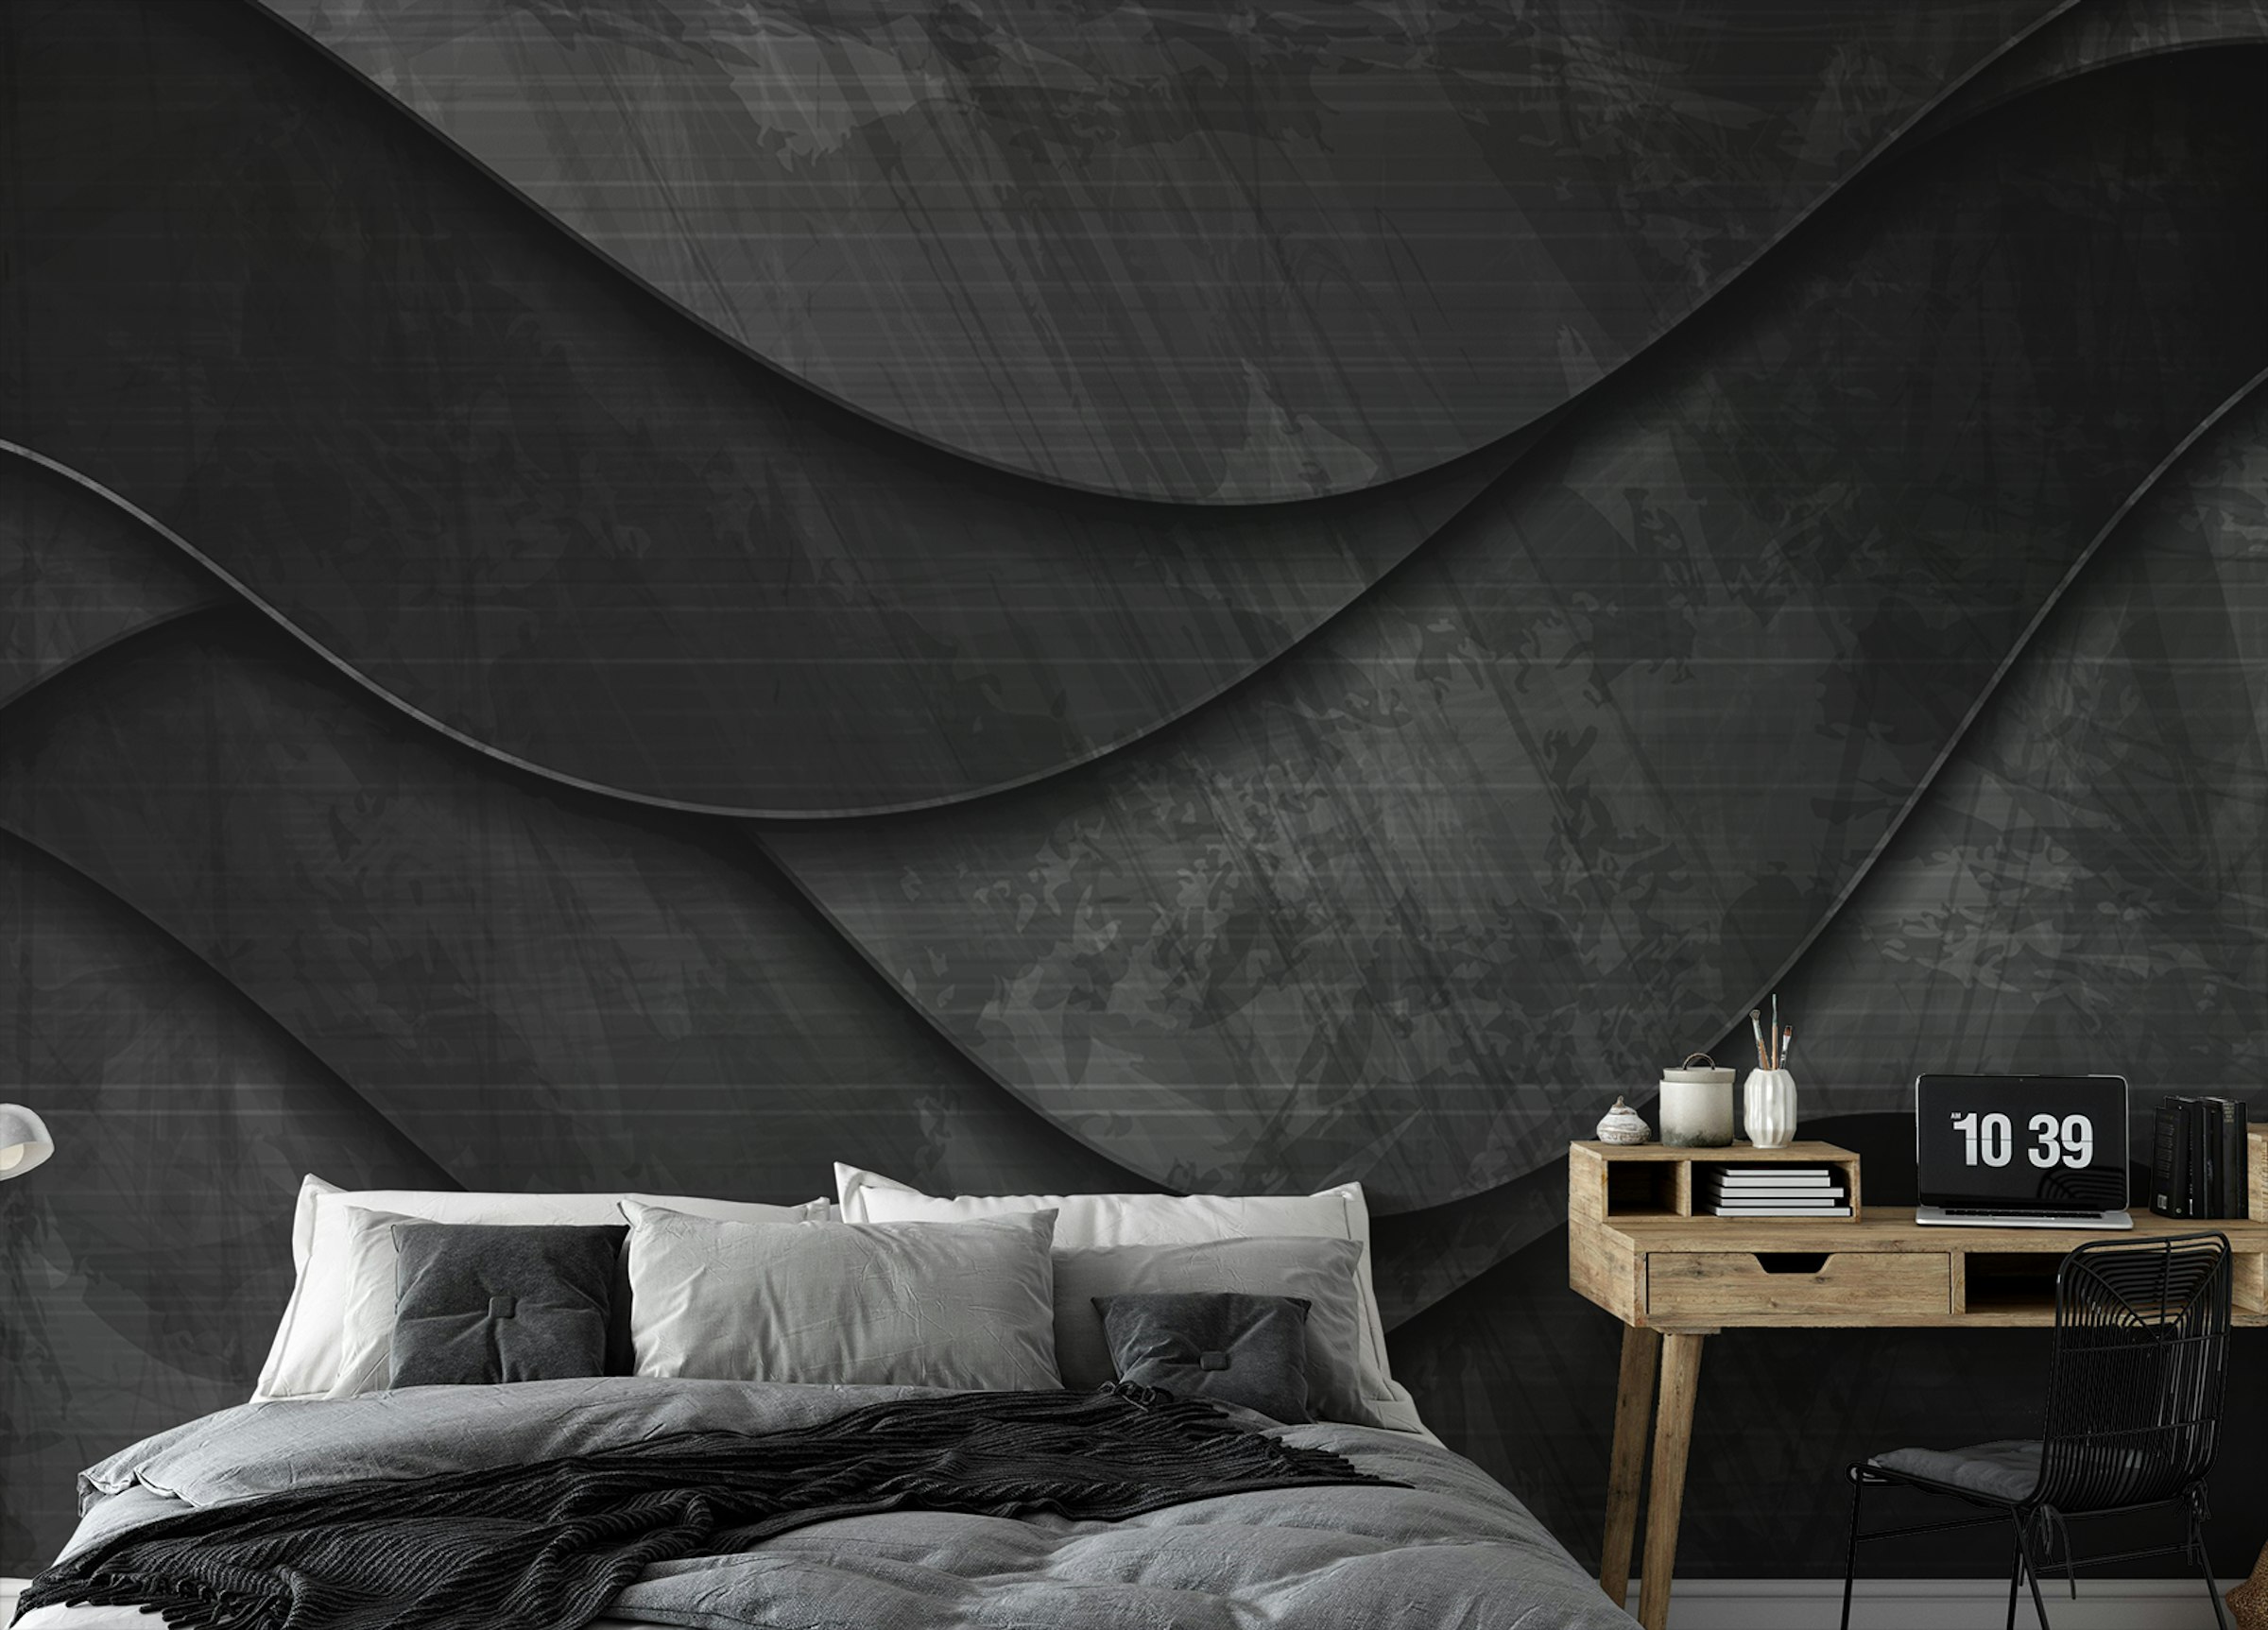 Custom made Sleek Black 3D Wave Wall Murals